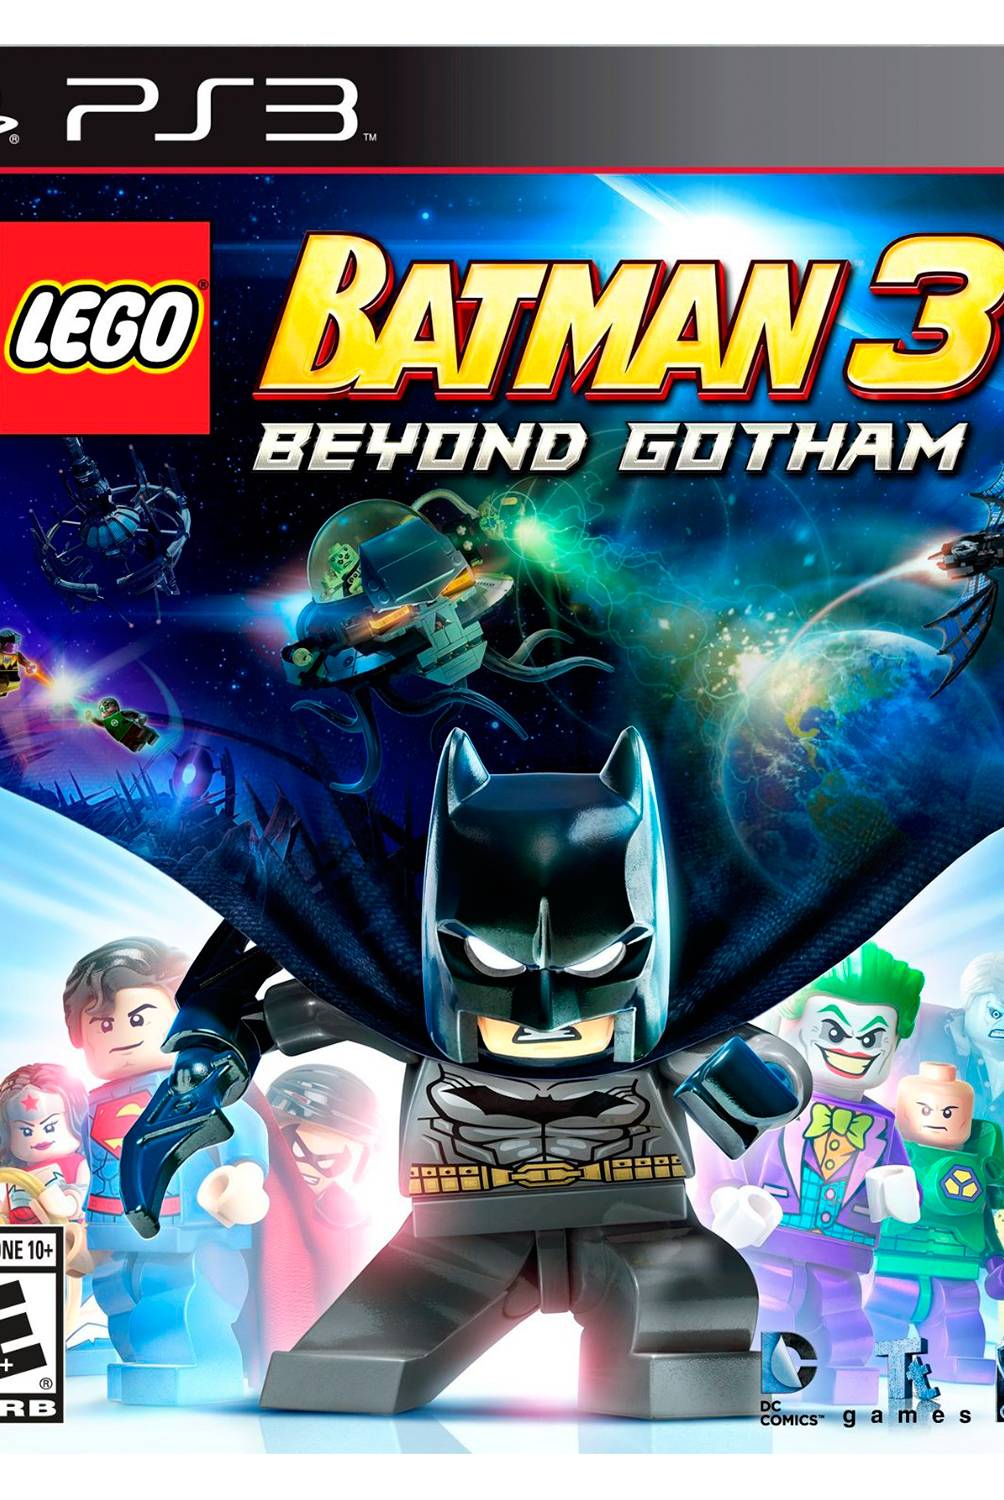 Warner Bros - Lego Batman 3 Beyond Gotham PS3